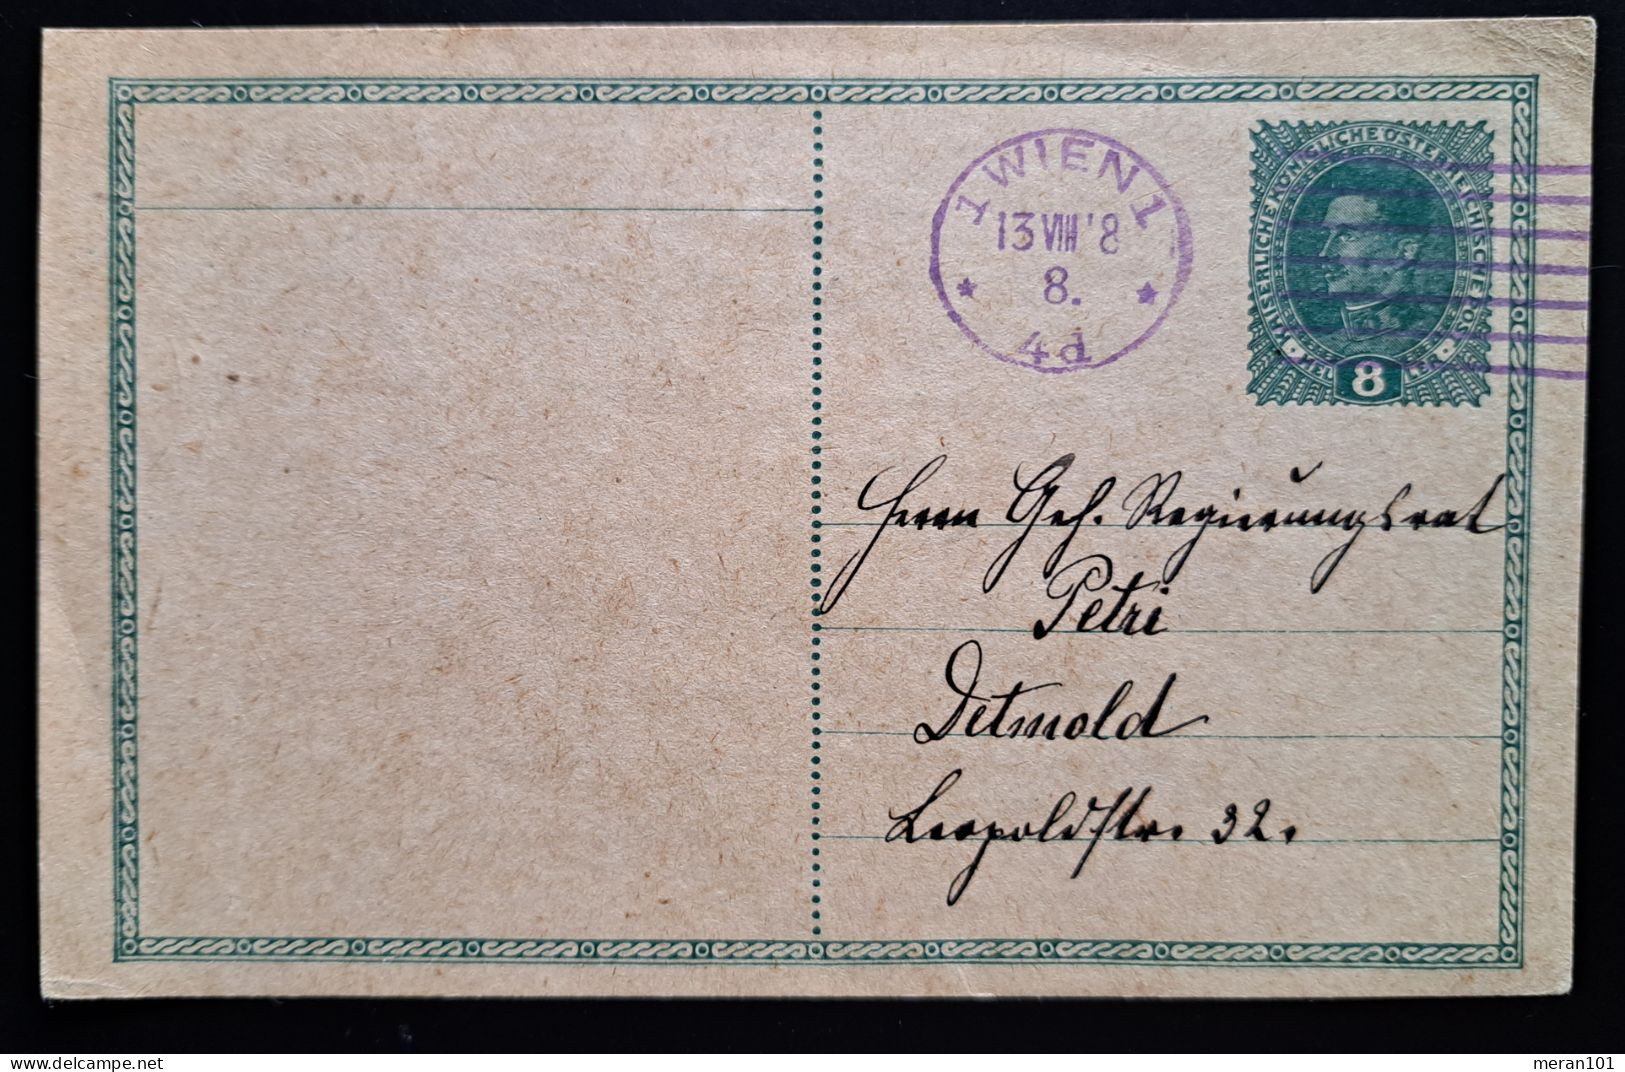 Österreich 1918, Postkarte 8 Heller WIEN - Lettres & Documents